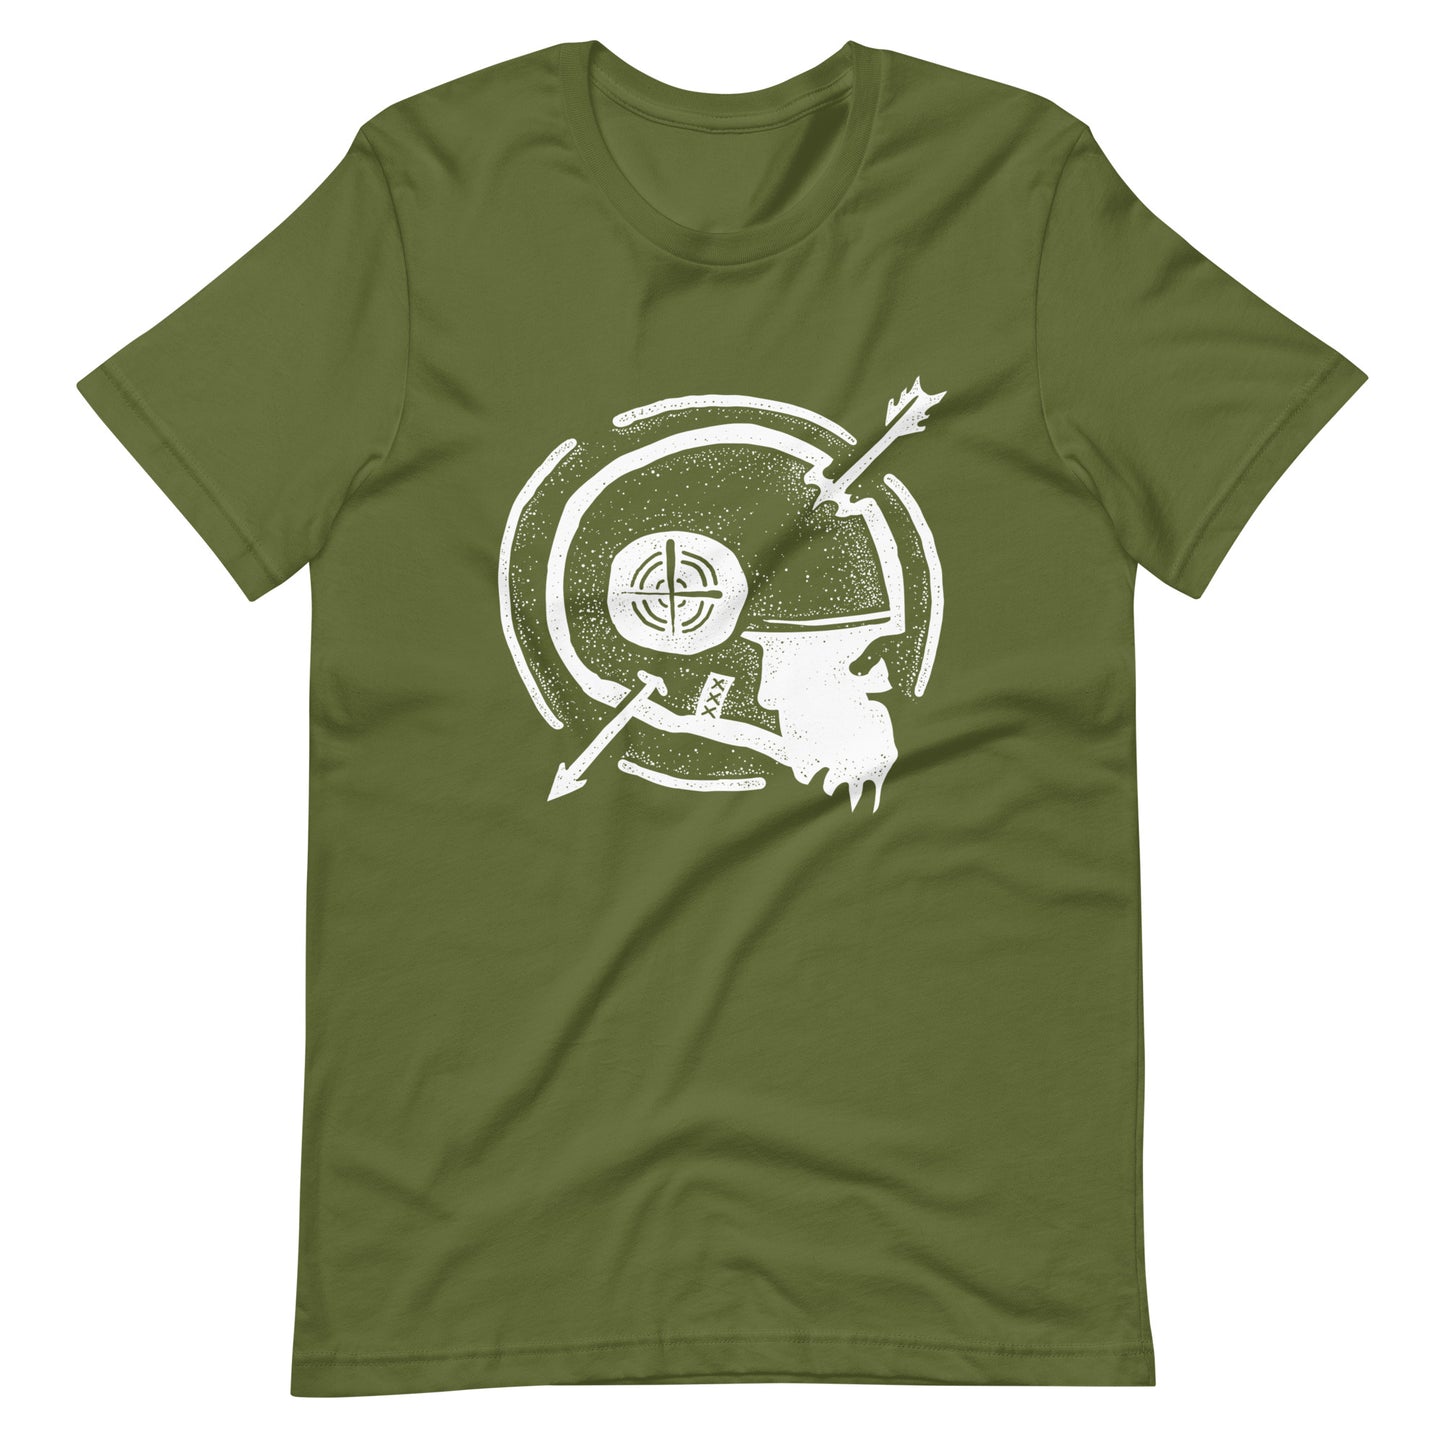 Dead Arrow White - Men's t-shirt - Olive Front